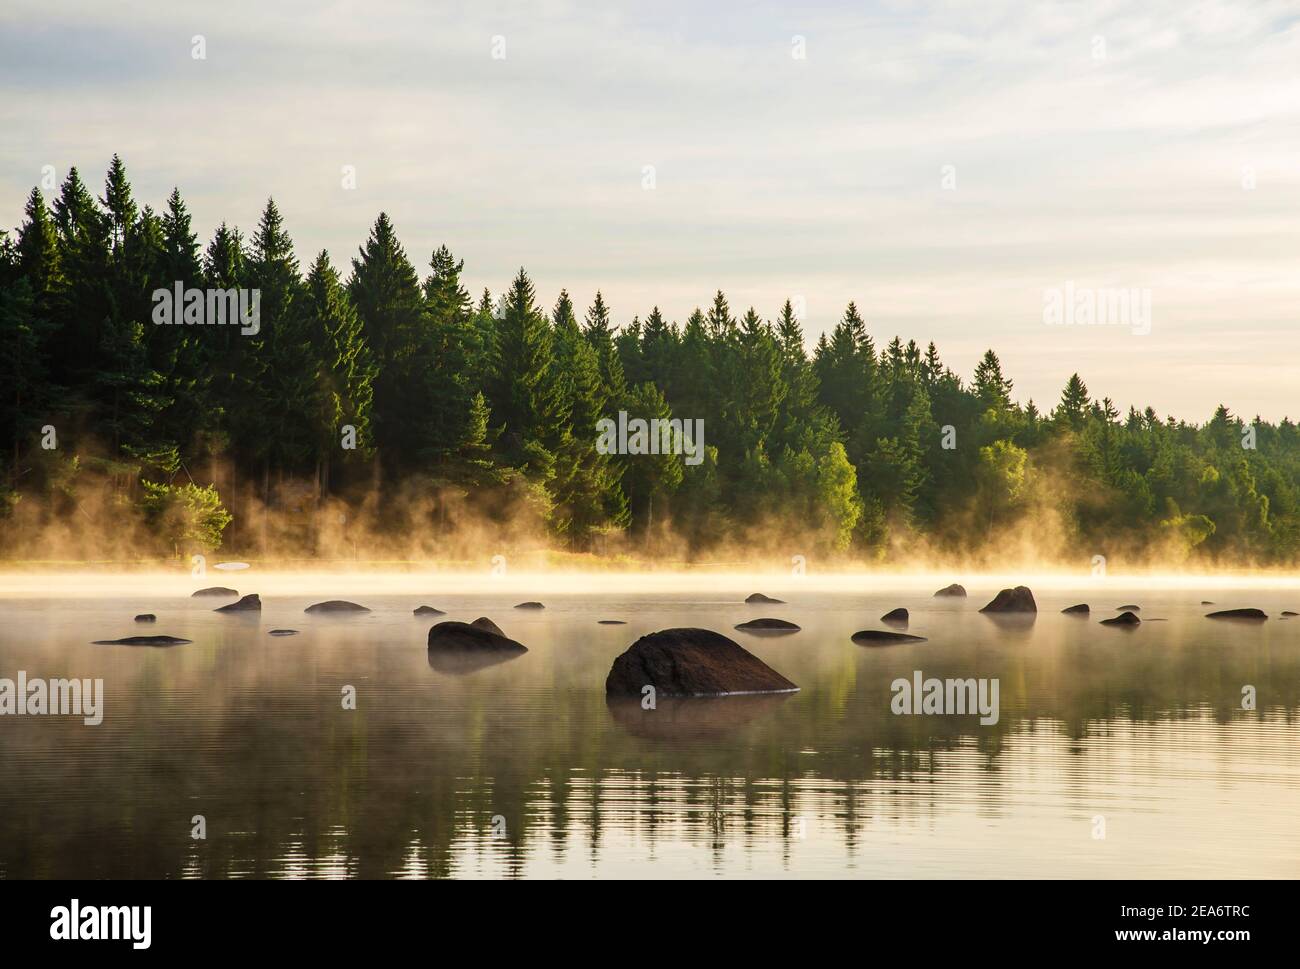 Ruhiger Waldsee (Teich) mit Felsbrocken an der Oberfläche bei nebligen Sonnenaufgang im Sommer. Tschechische republik, Südböhmen, Naturpark namens "Tschechische Kanada". Stockfoto